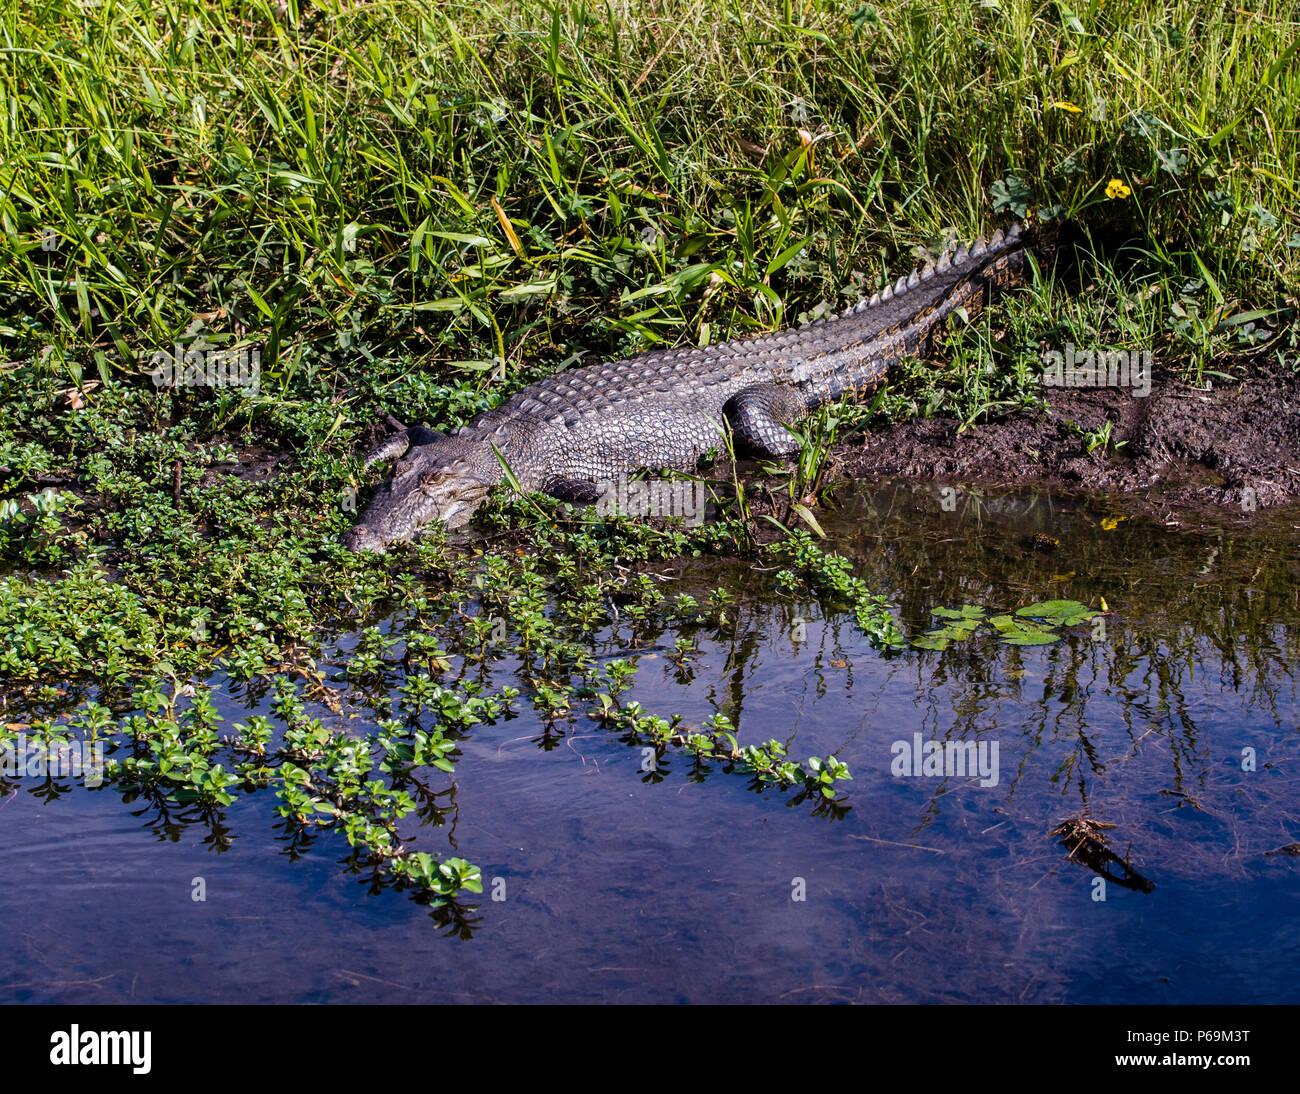 Crocodile in Northern Australia Stock Photo